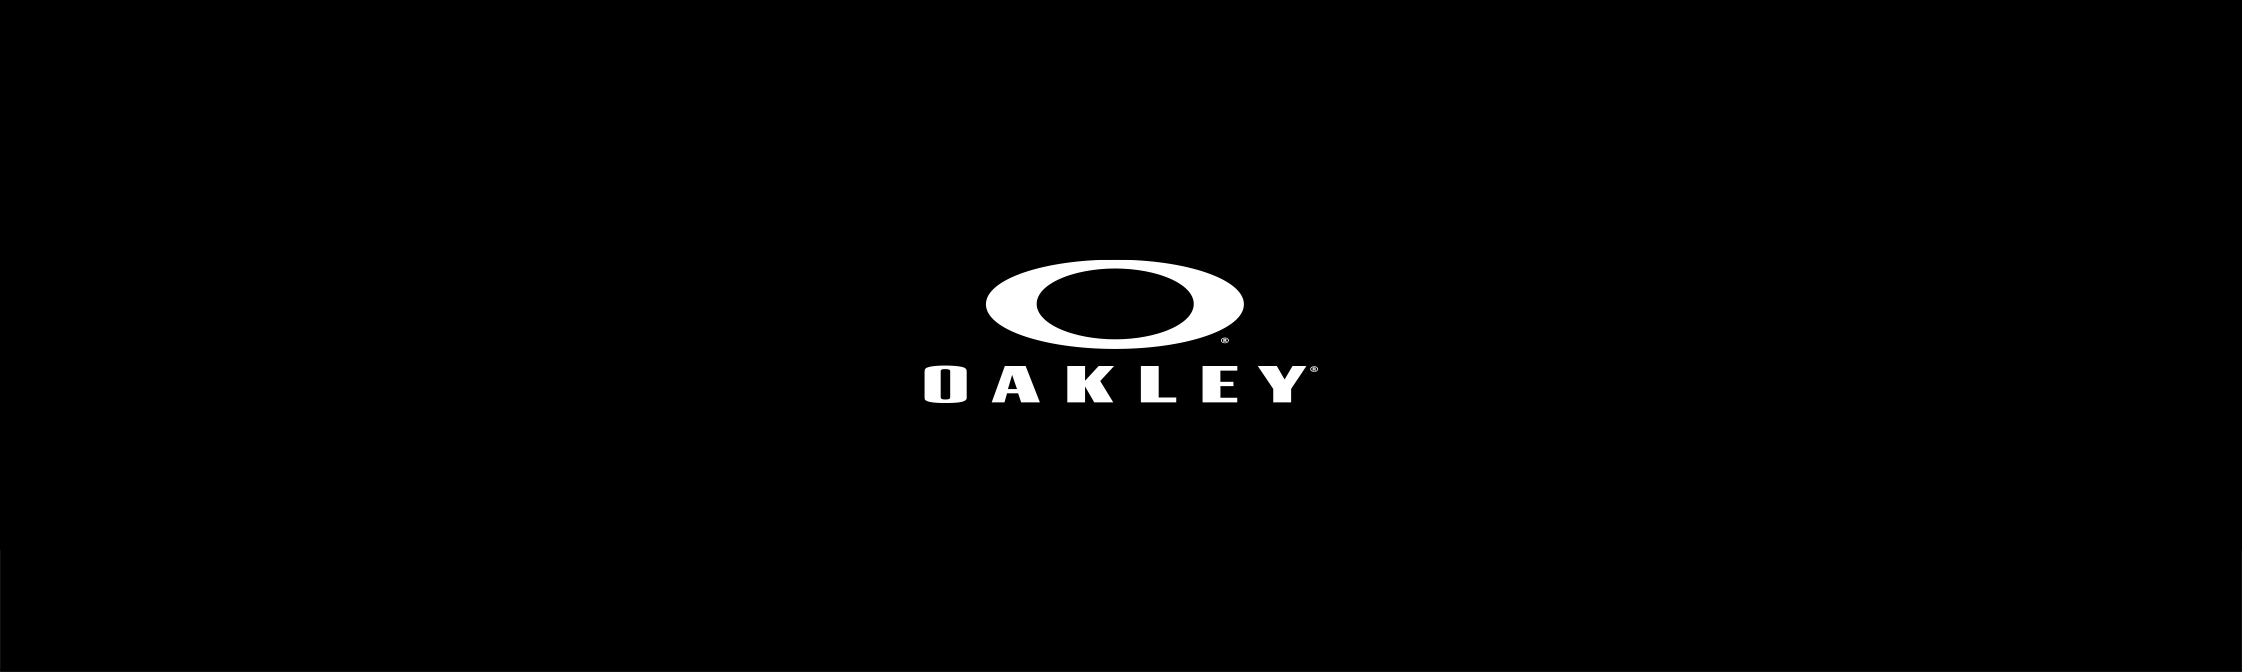 oakley header